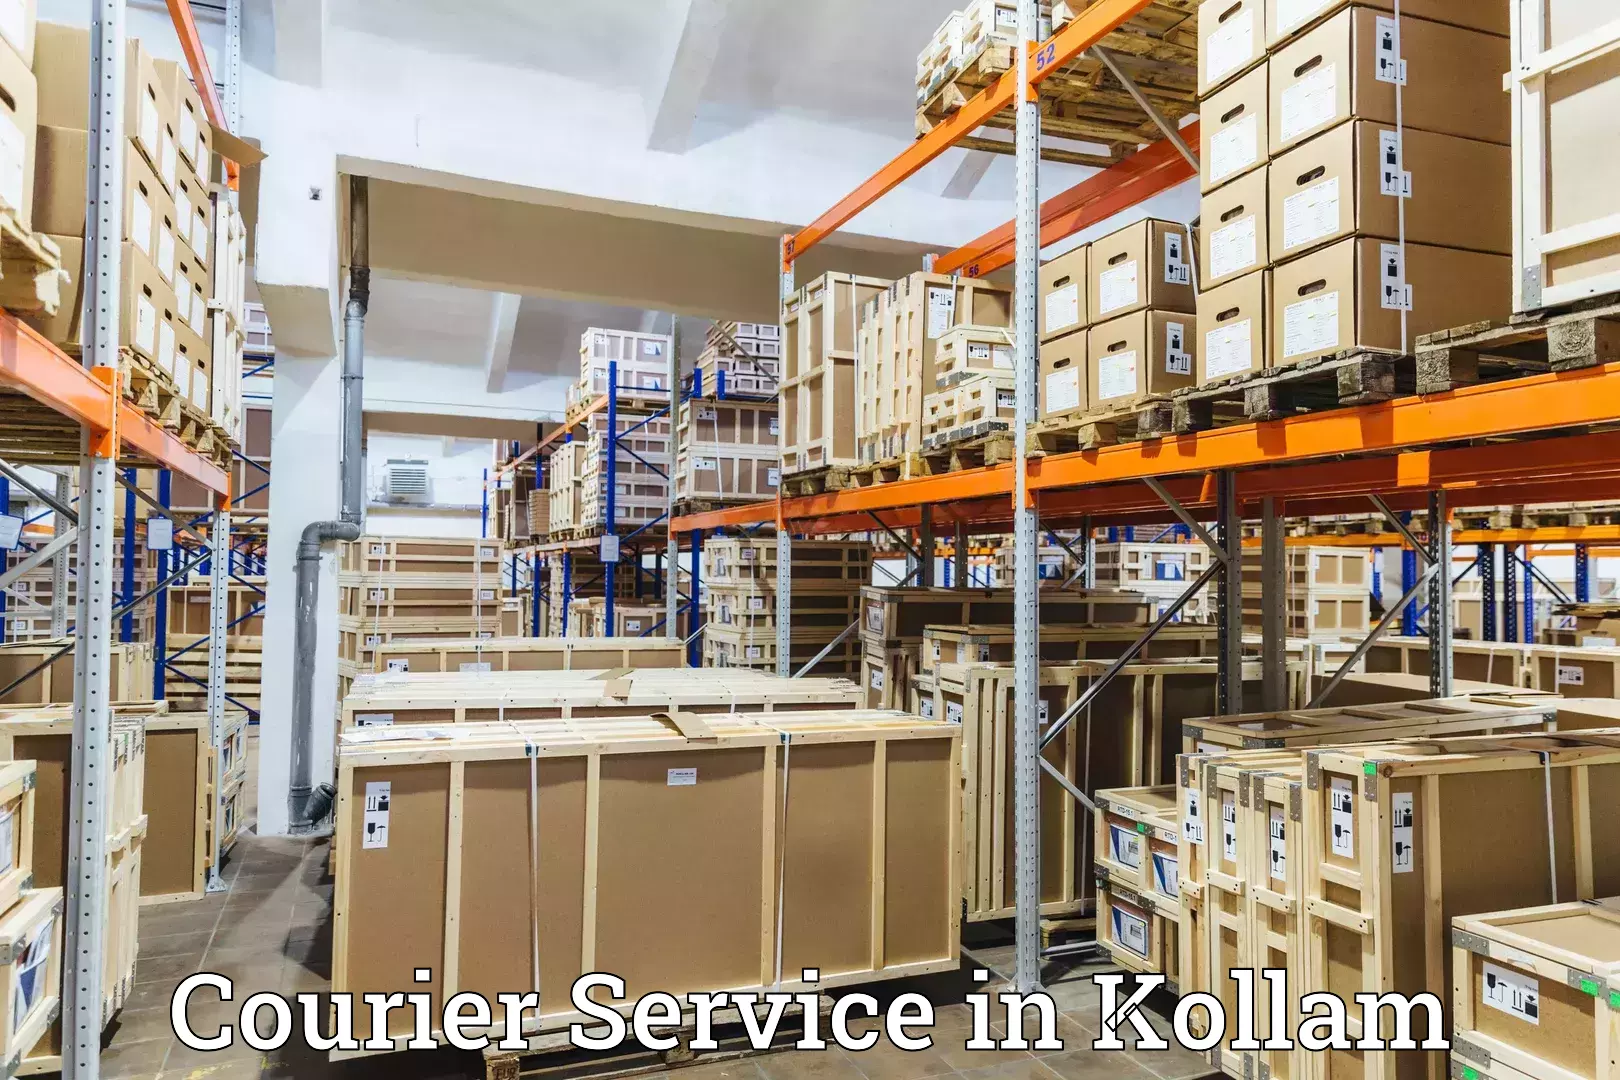 Customer-centric shipping in Kollam